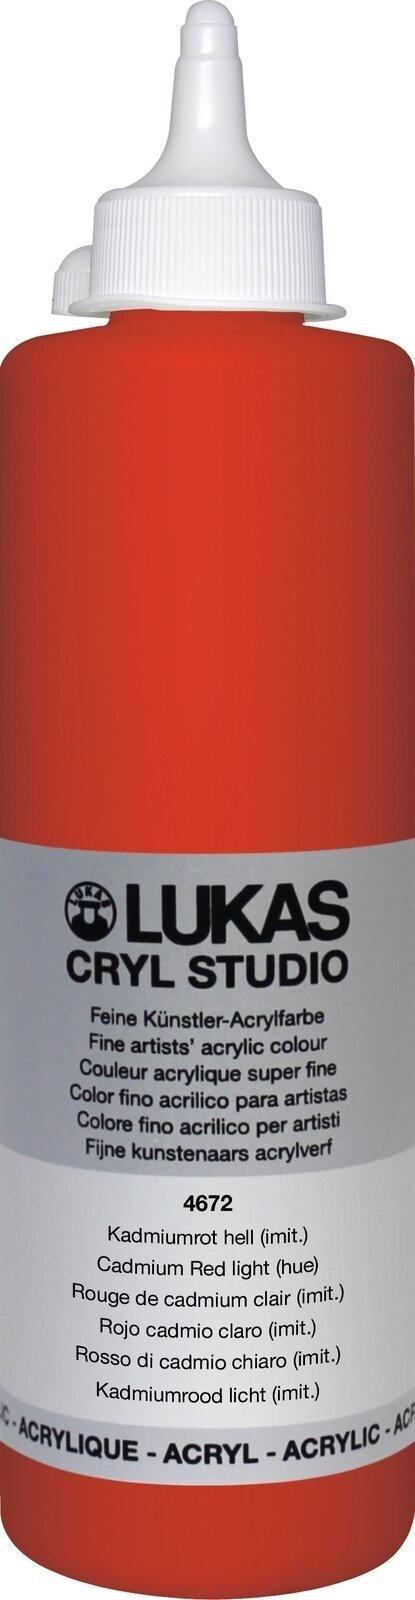 Levně Lukas Cryl Studio Akrylová barva 500 ml Cadmium Red Light Hue